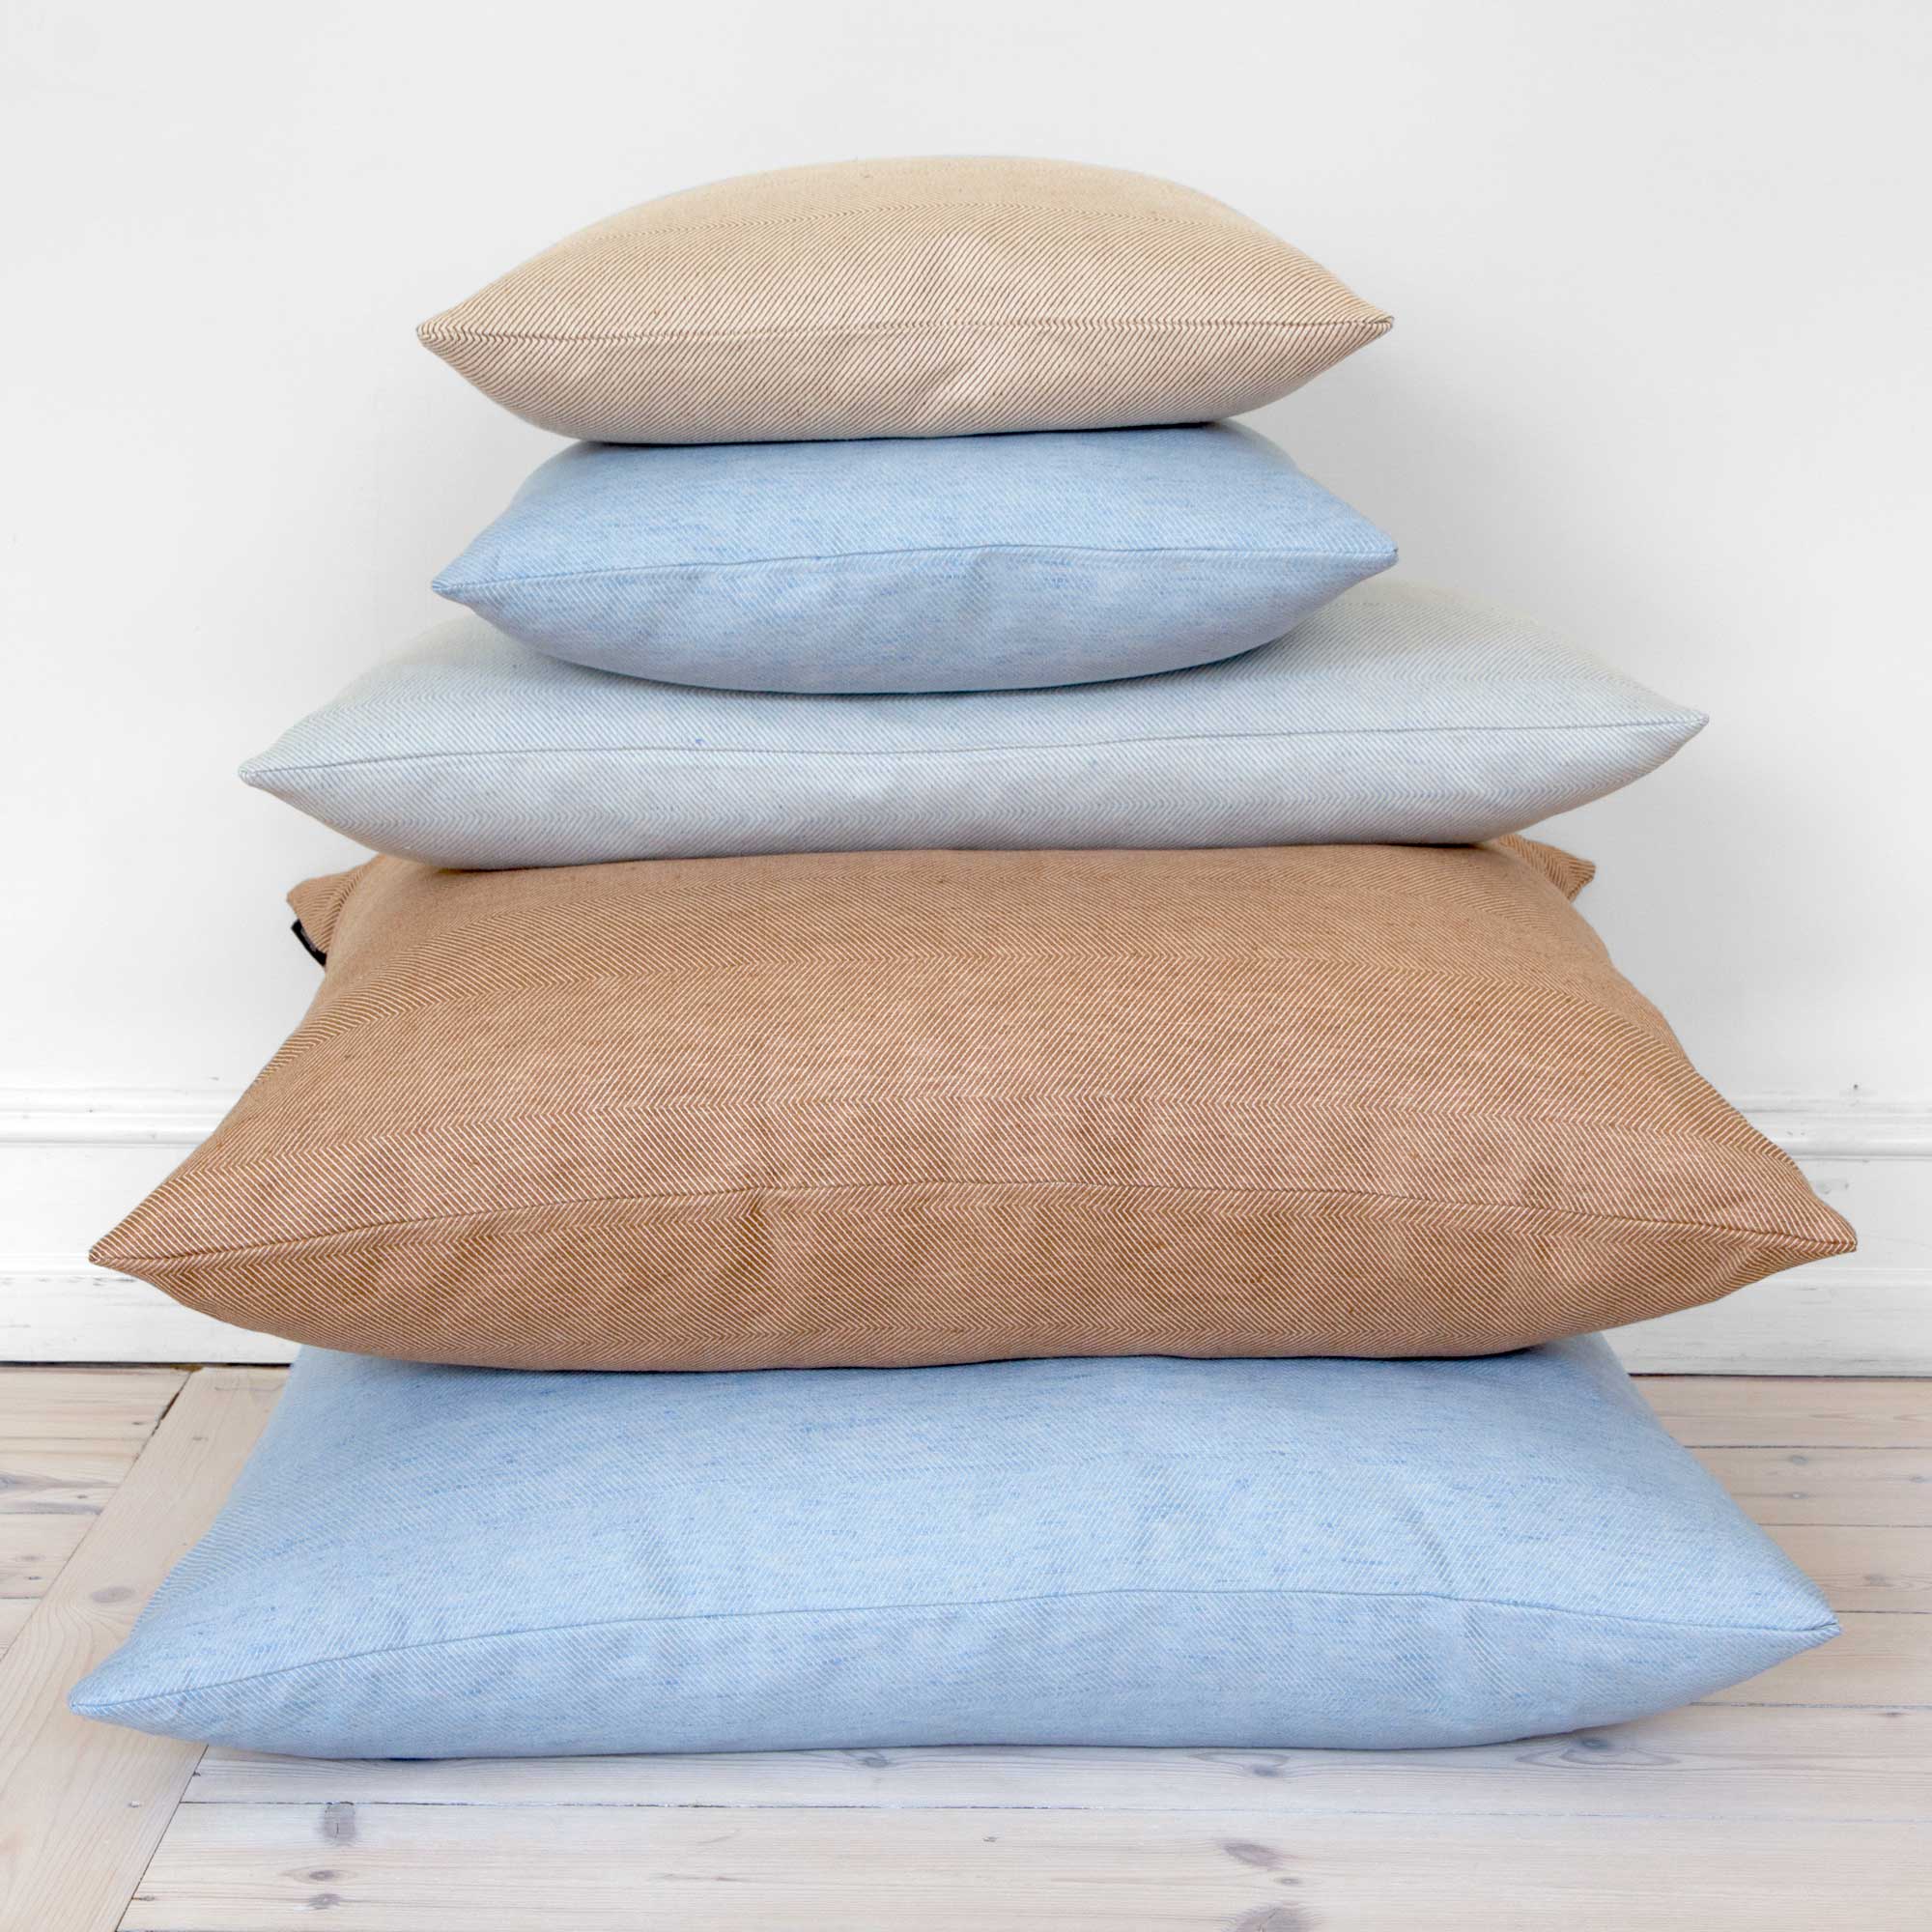 Cushions linen/cotton herringbone weave, design by Anne Rosenberg, RosenbergCph